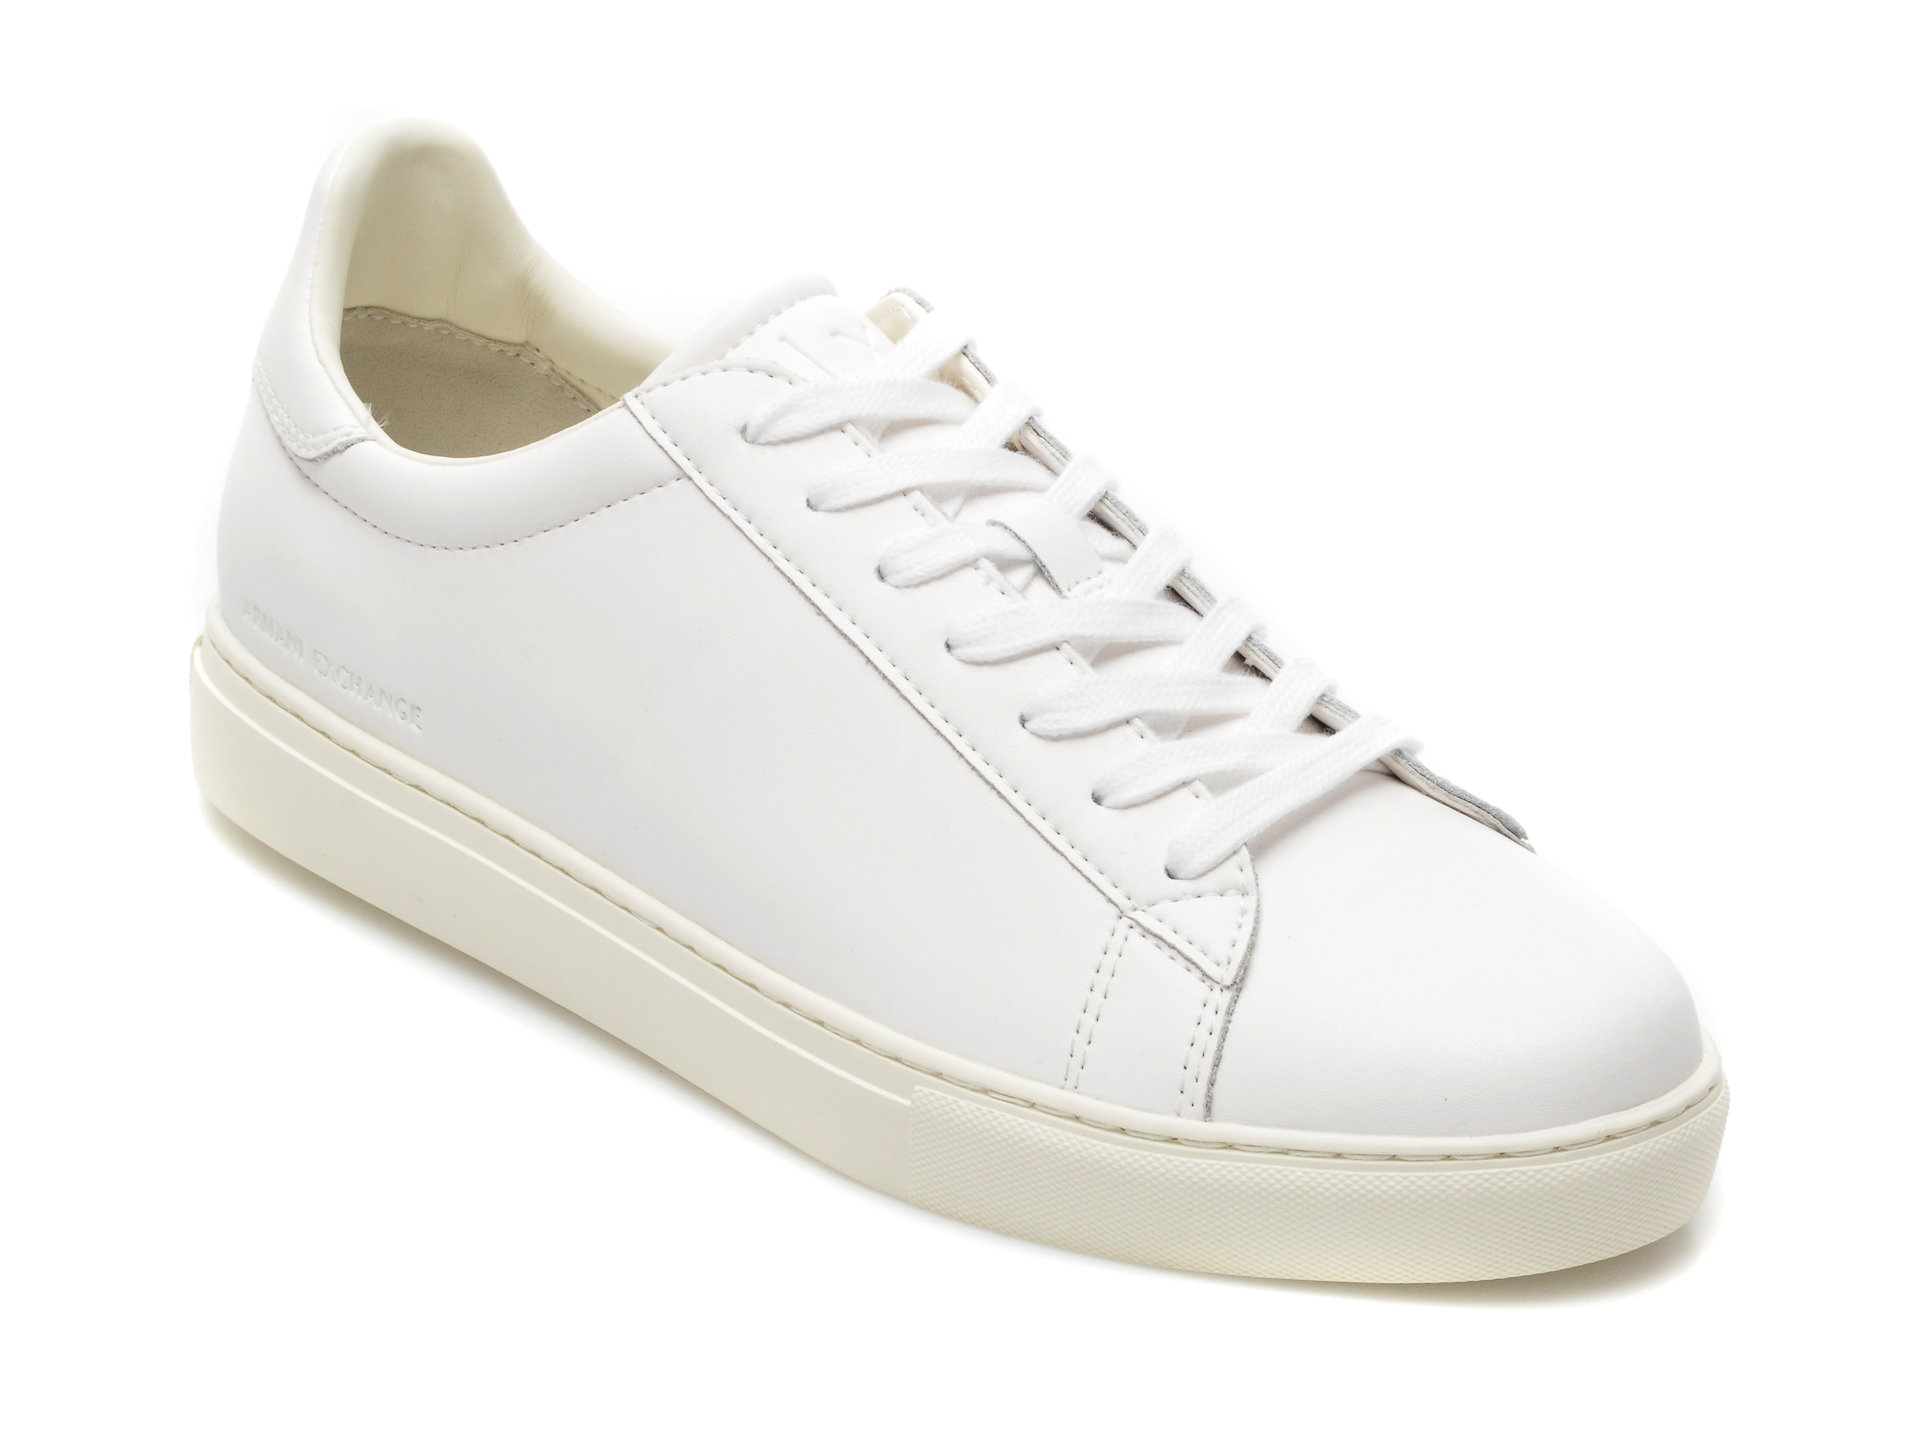 Pantofi sport ARMANI EXCHANGE albi, XUX001, din piele naturala